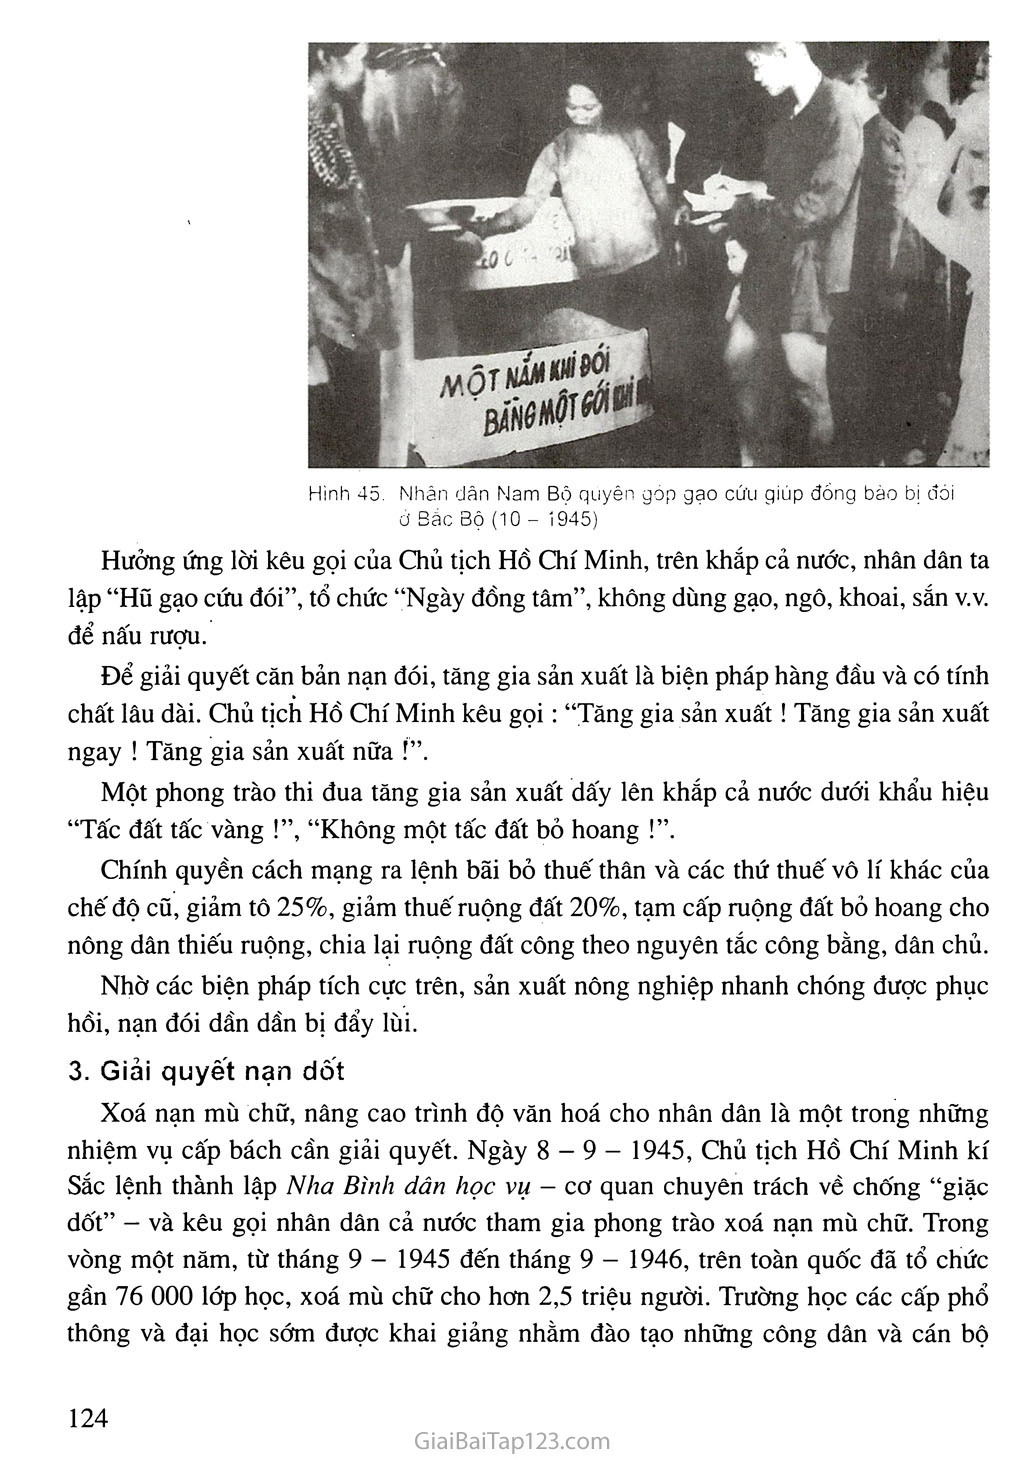 Bài 17. Nước Việt Nam Dân chủ Cộng hoà từ sau ngày 2-9-1945 đến trước ngày 19 - 12 - 1946 trang 4